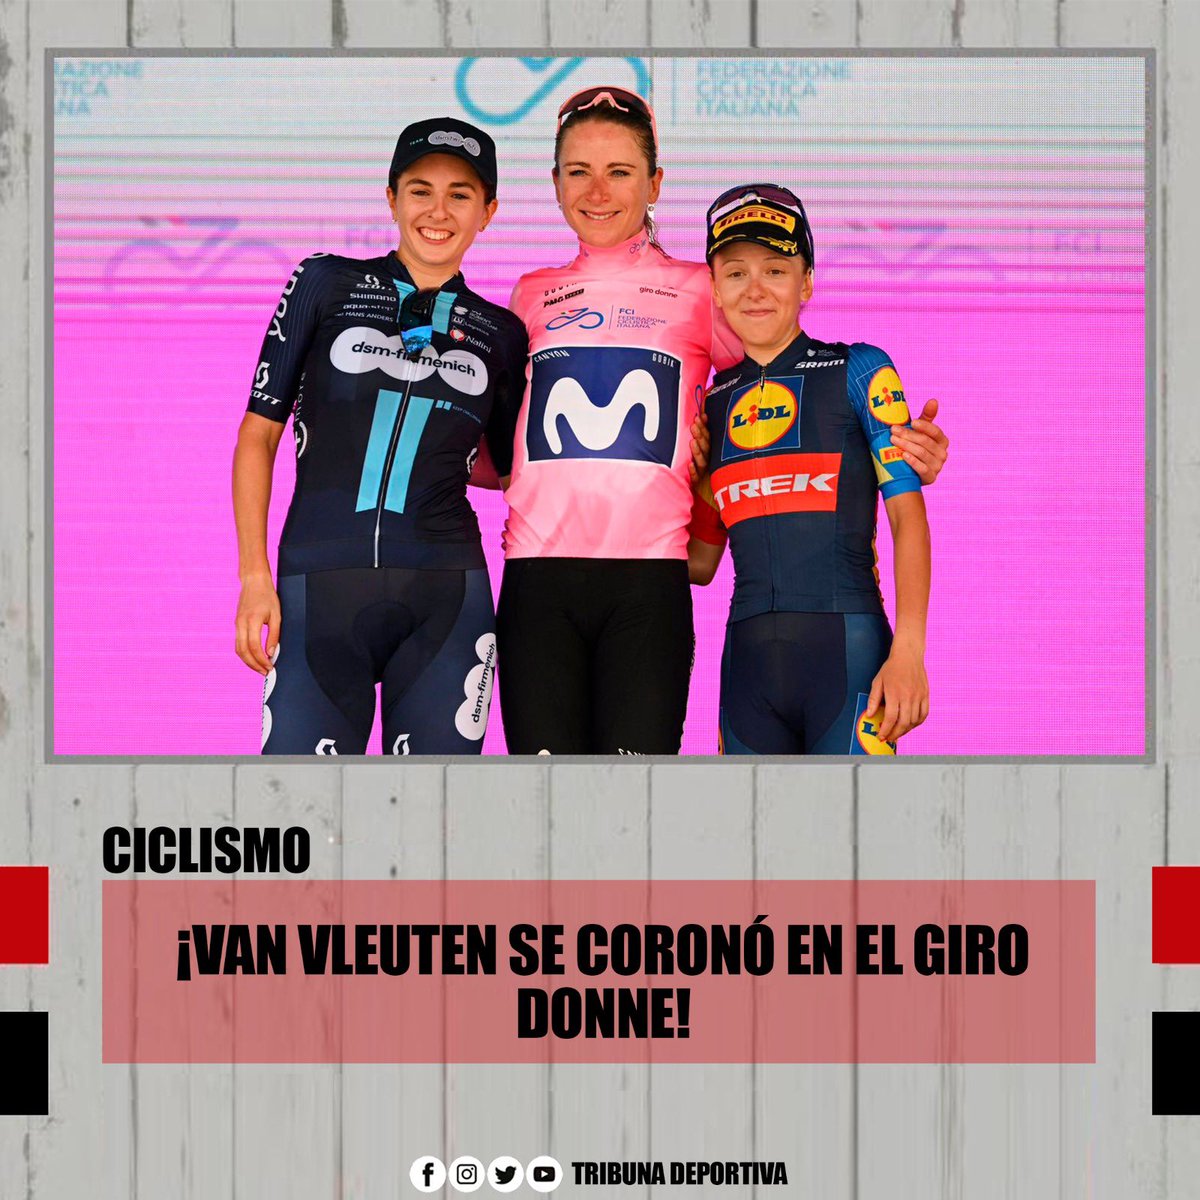 ¡VAN VLEUTEN SE CORONÓ EN EL GIRO DONNE!
Annemiek Van Vleuten se quedó con el primer lugar de la carrera de ciclismo de ruta Giro Donne.
La ciclista neerlandesa consiguió su cuarto título y se coloca como la segunda más ganadora del torneo.
#GiroDonne #VanVleuten